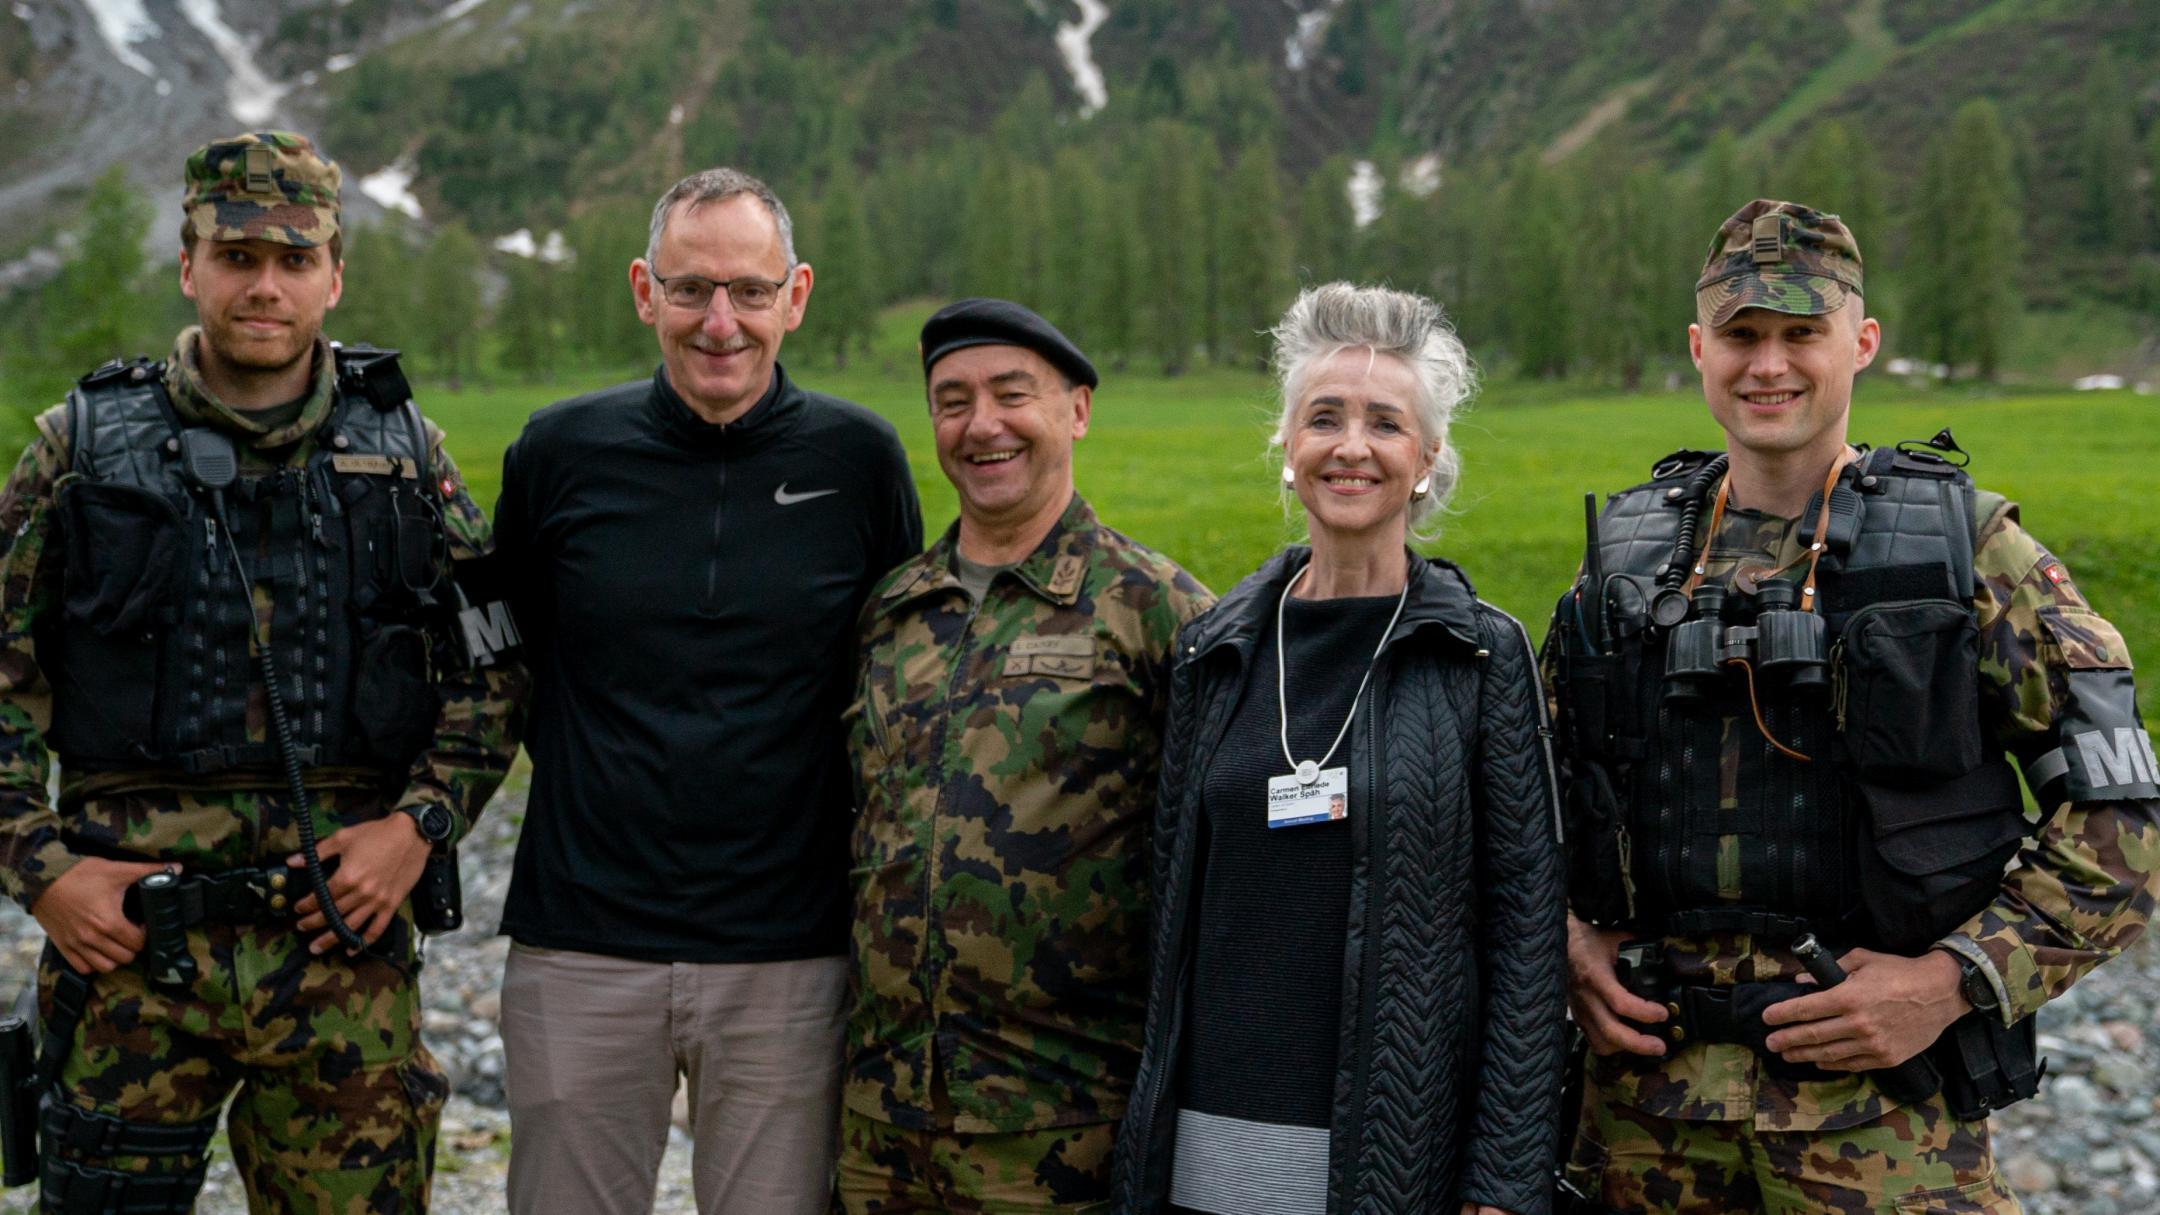 Regierungsrätin Carmen Walker Späh und Regierungsrat Mario Fehr auf Truppenbesuch am WEF in Davos.